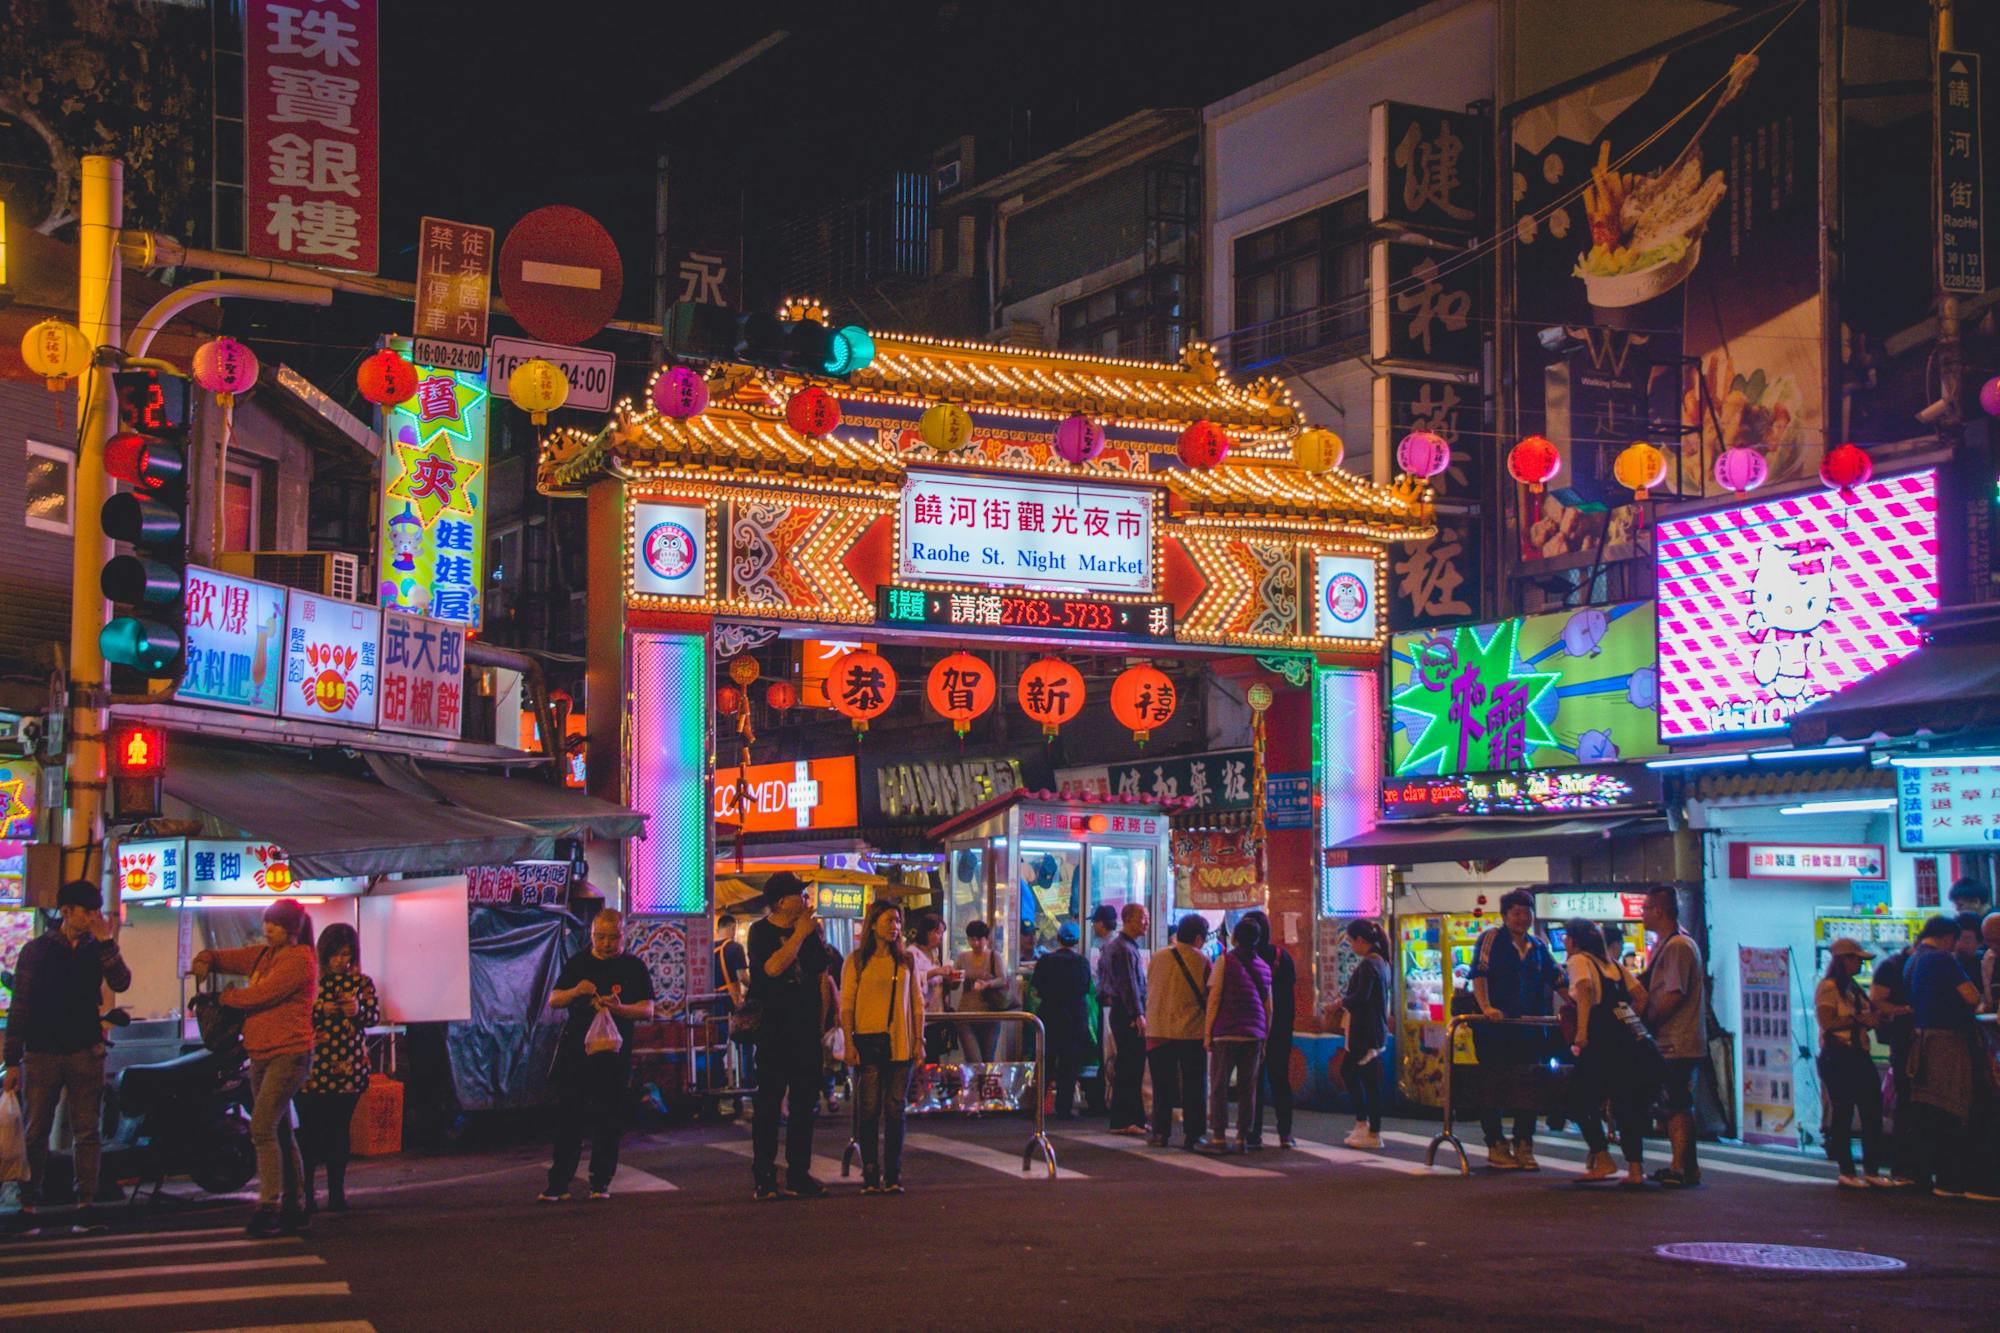 Die Menschen schlendern durch den Nachtmarkt. Viele bunte Werbelichter erhellen die Straßen in Taipei.  